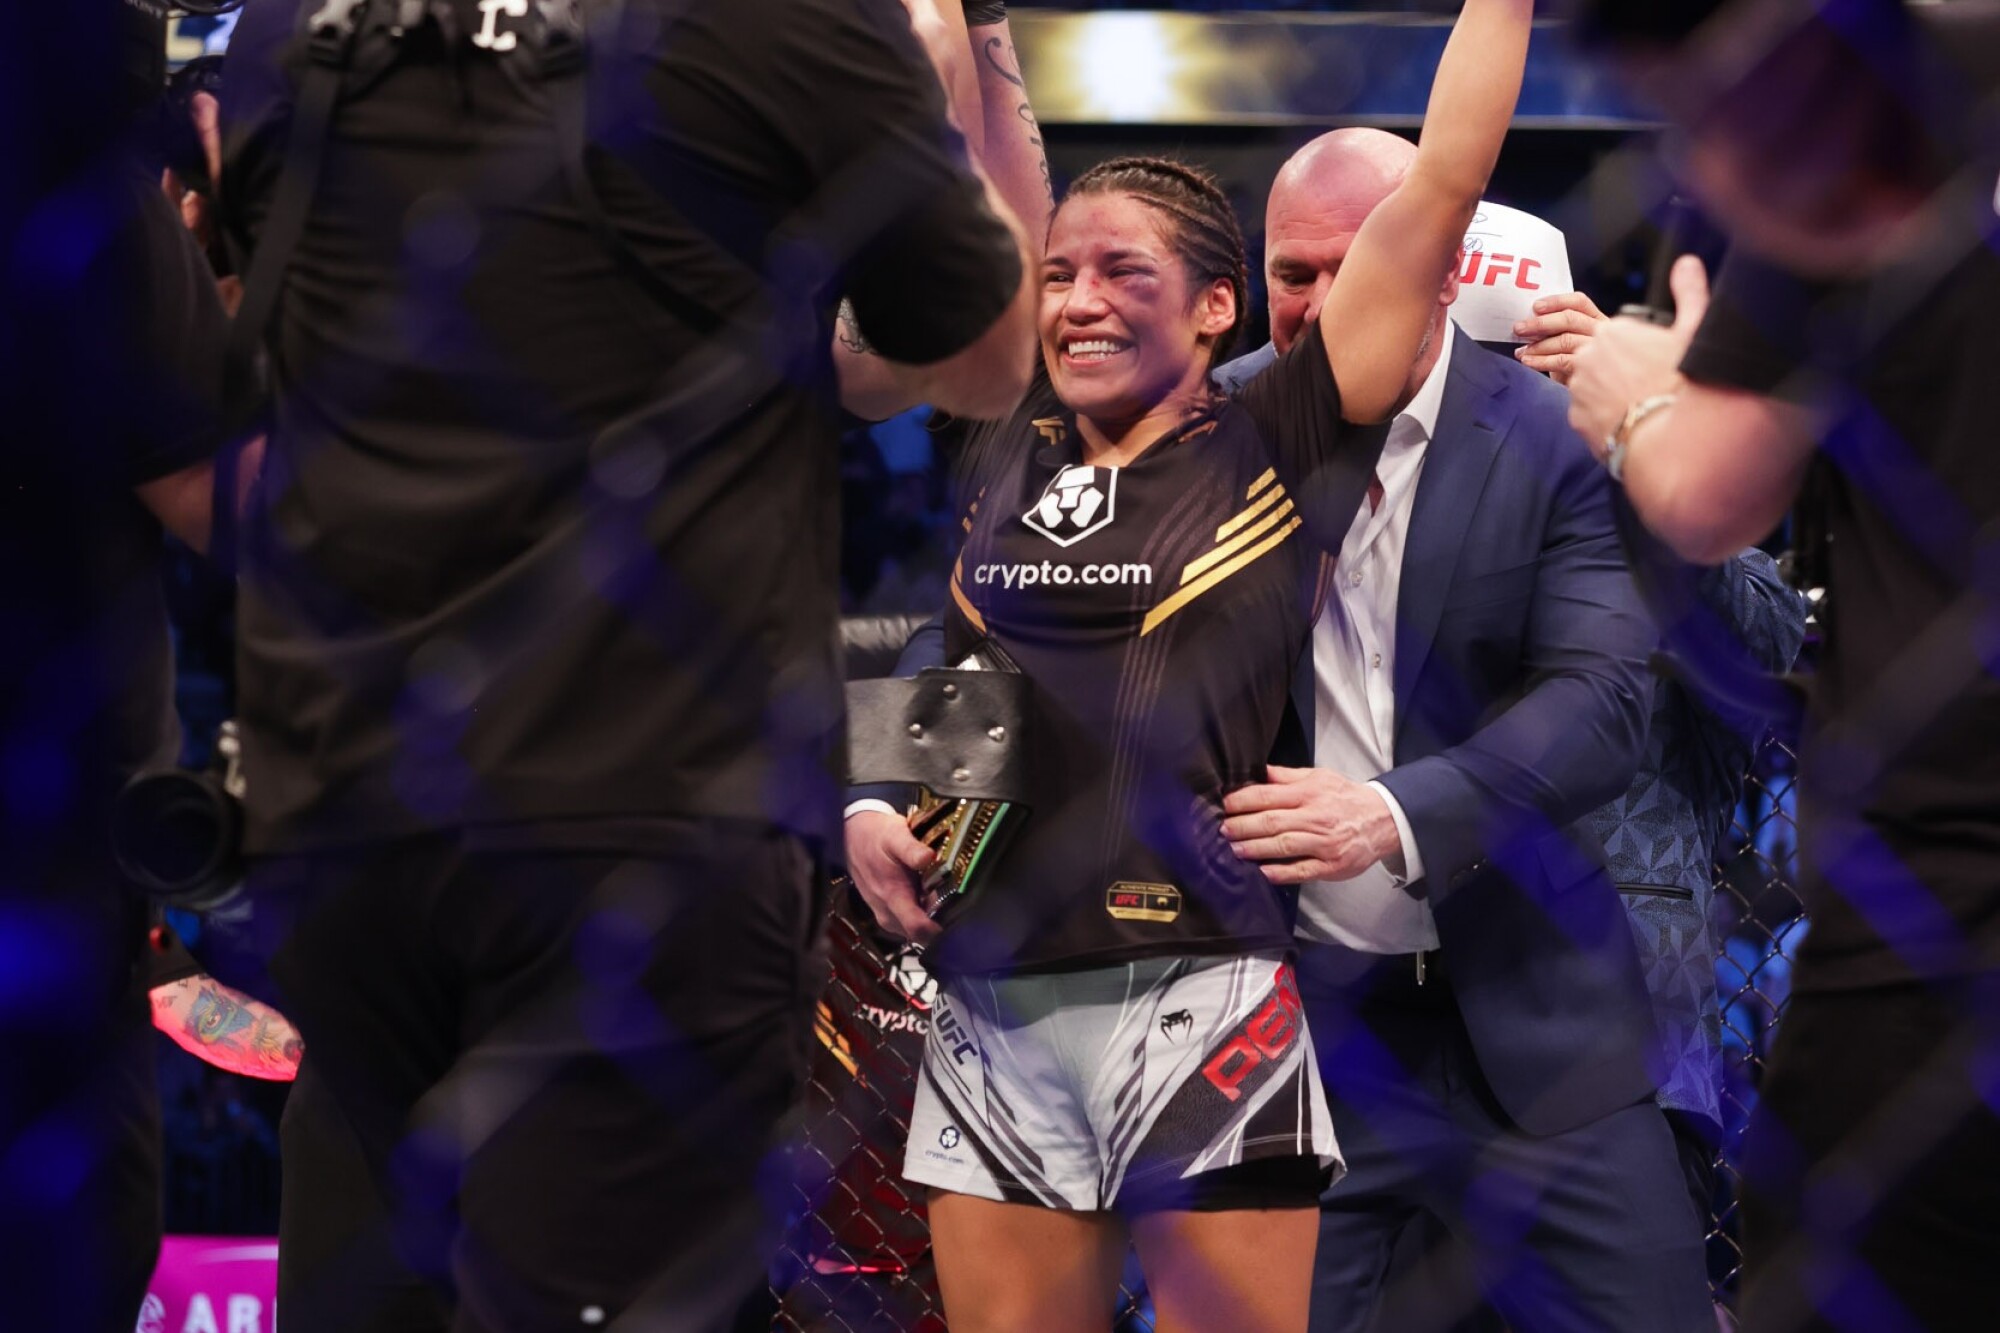 Julianna Peña recibe el cinturón de UFC tras vencer a Amanda Nunes el sábado.